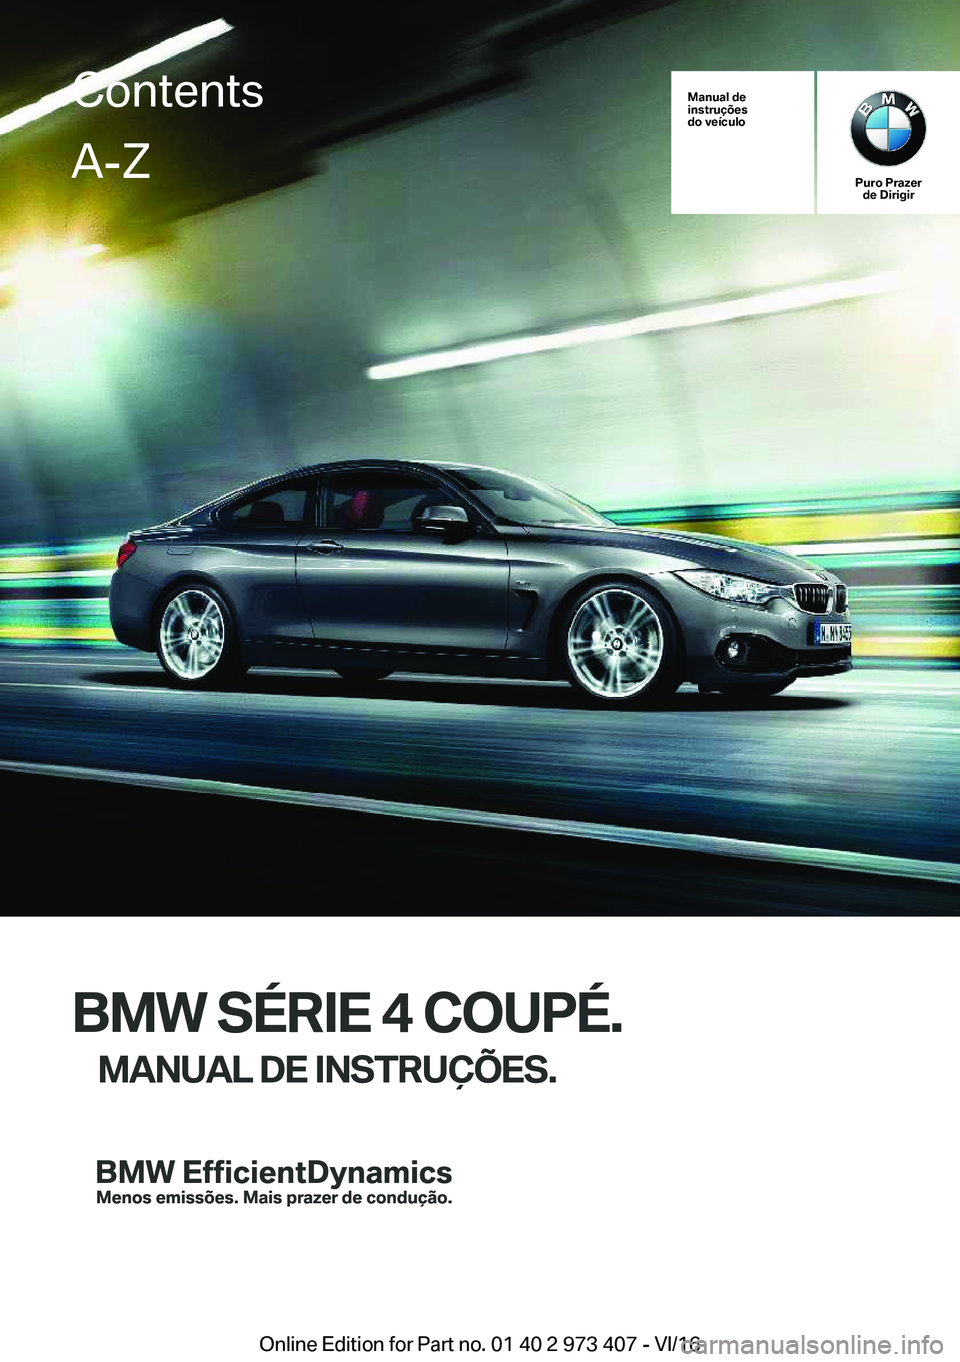 BMW 4 SERIES COUPE 2017  Manual do condutor (in Portuguese) �M�a�n�u�a�l��d�e
�i�n�s�t�r�u�